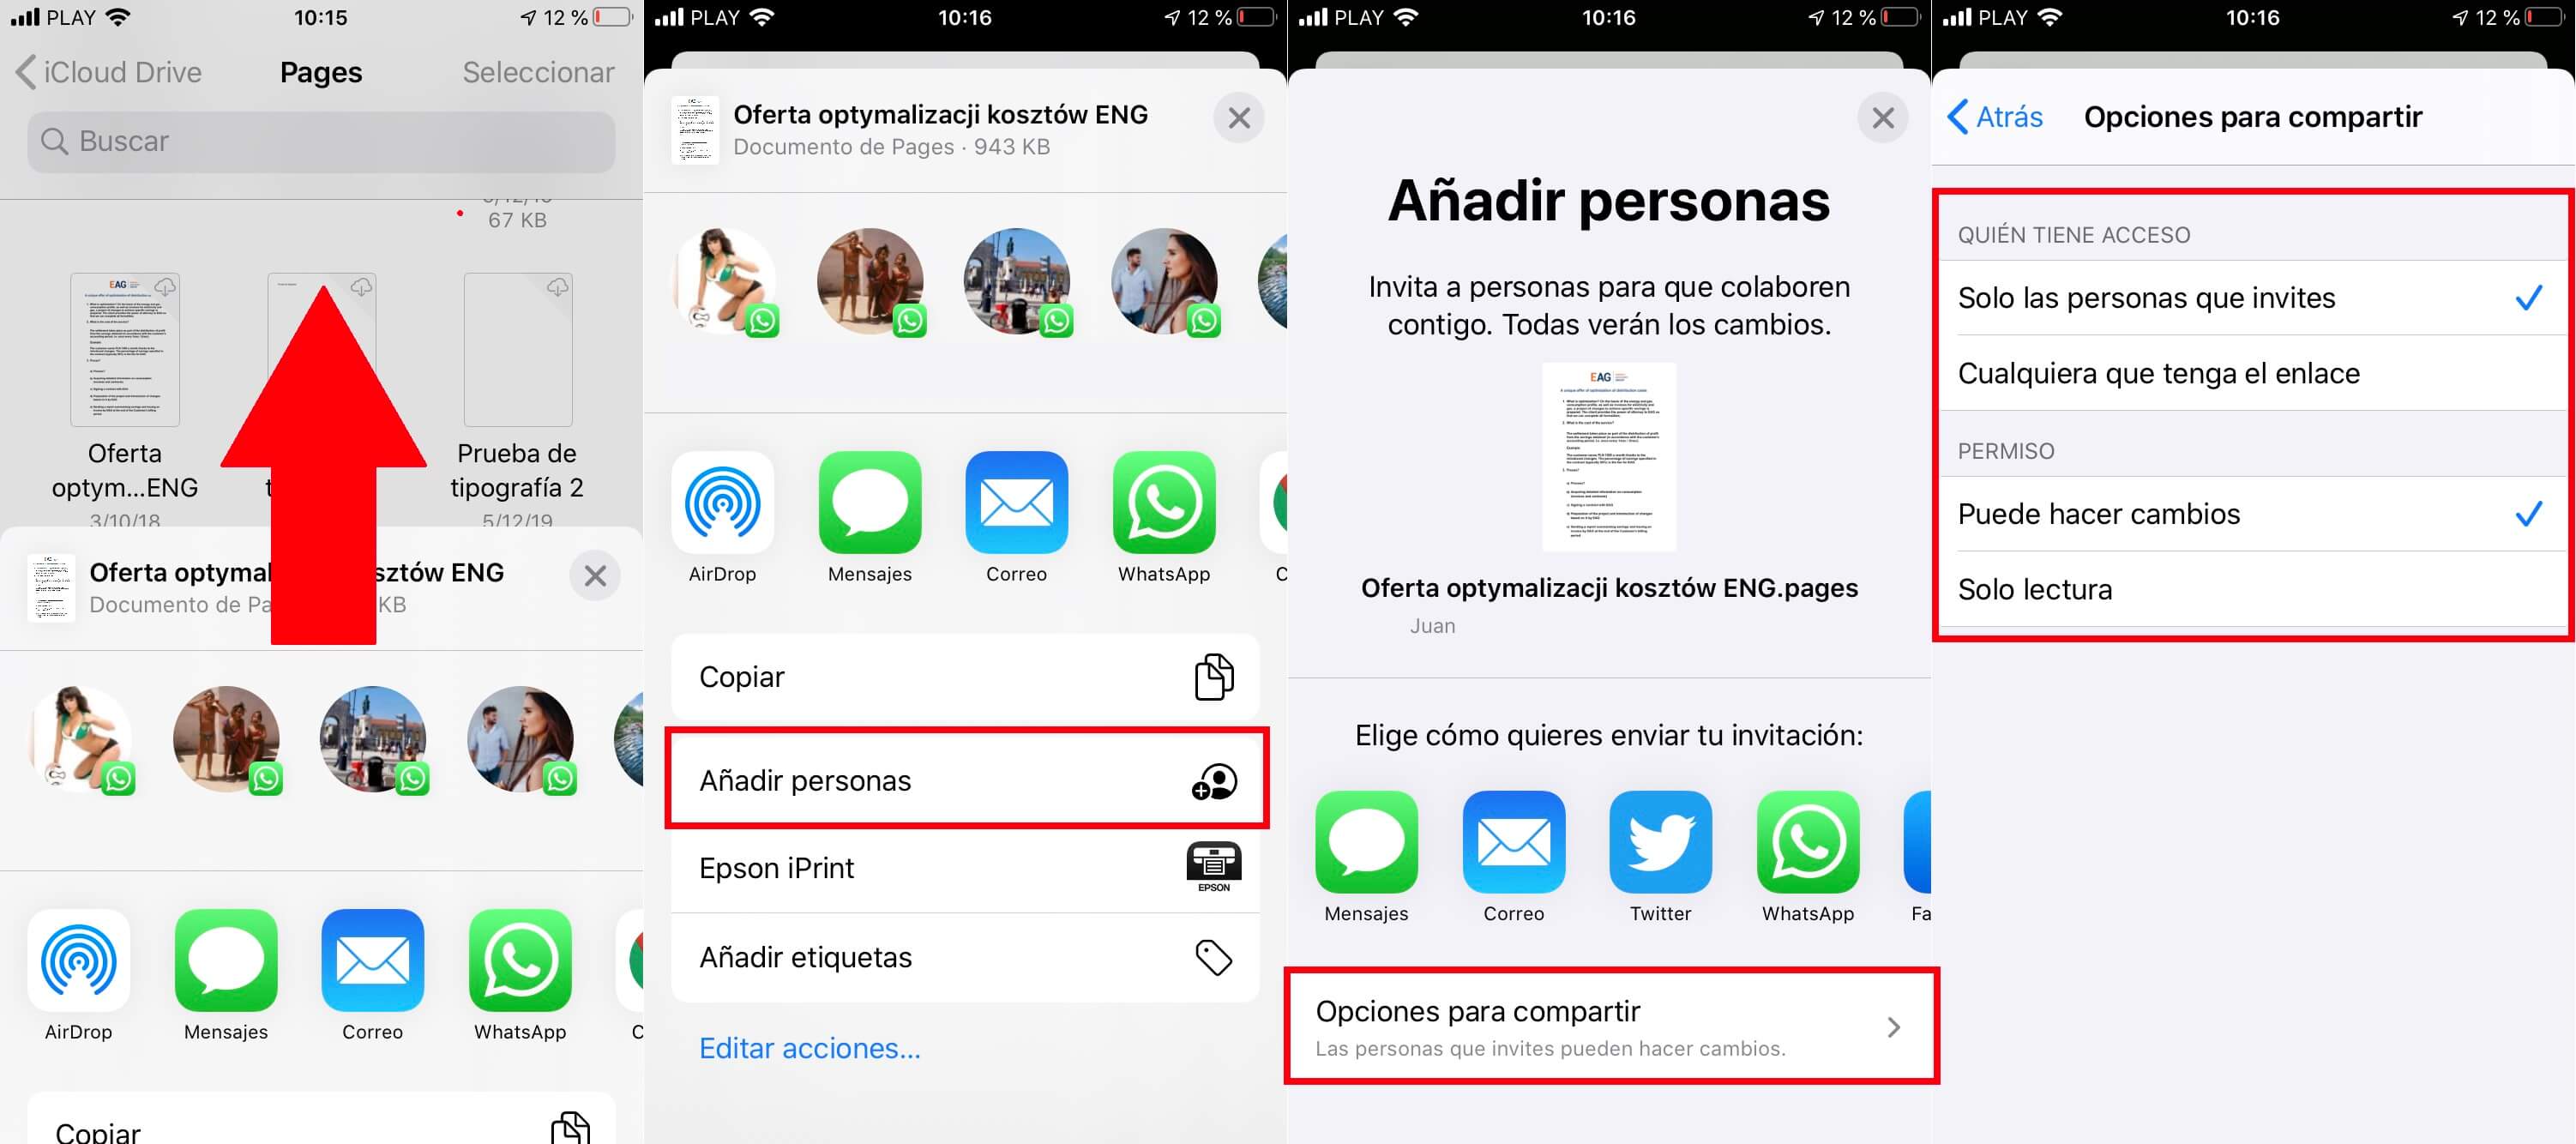 iphone permite compartir archivos usando icloud drive de la app archivos